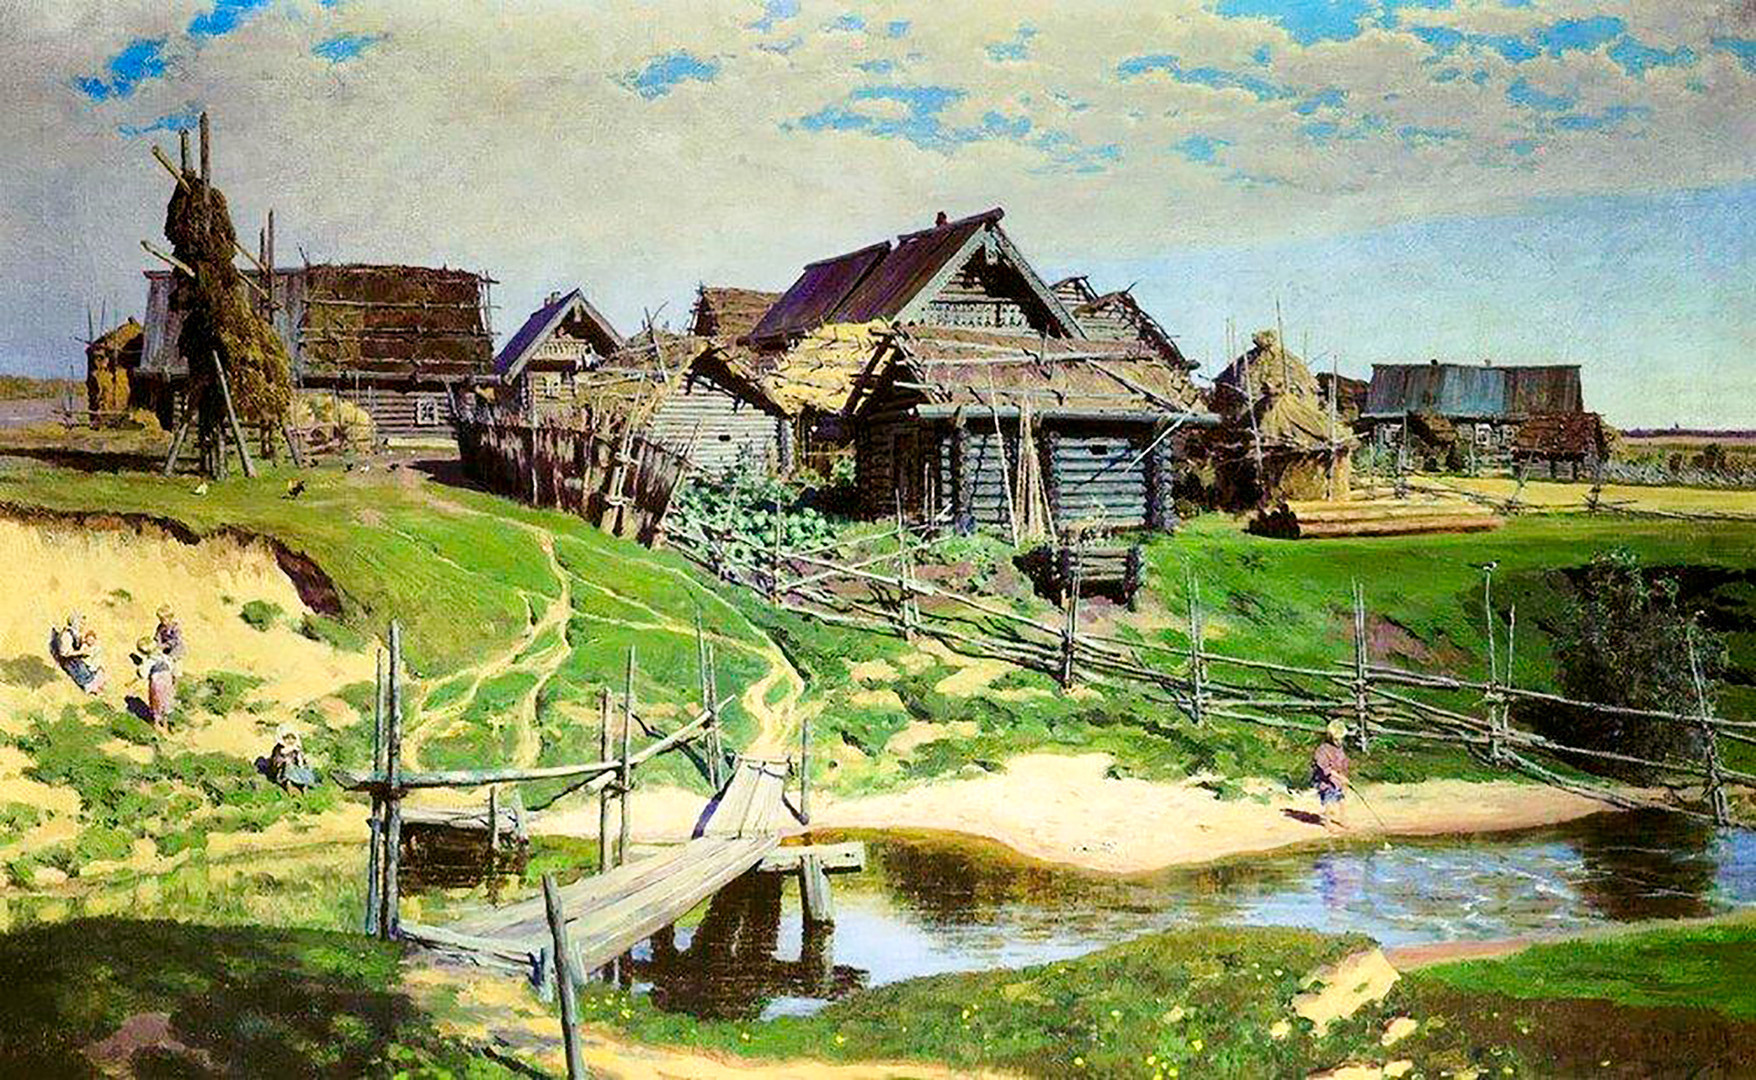 「ロシアの村」、ワシーリー・ポレーノフ画、1889年